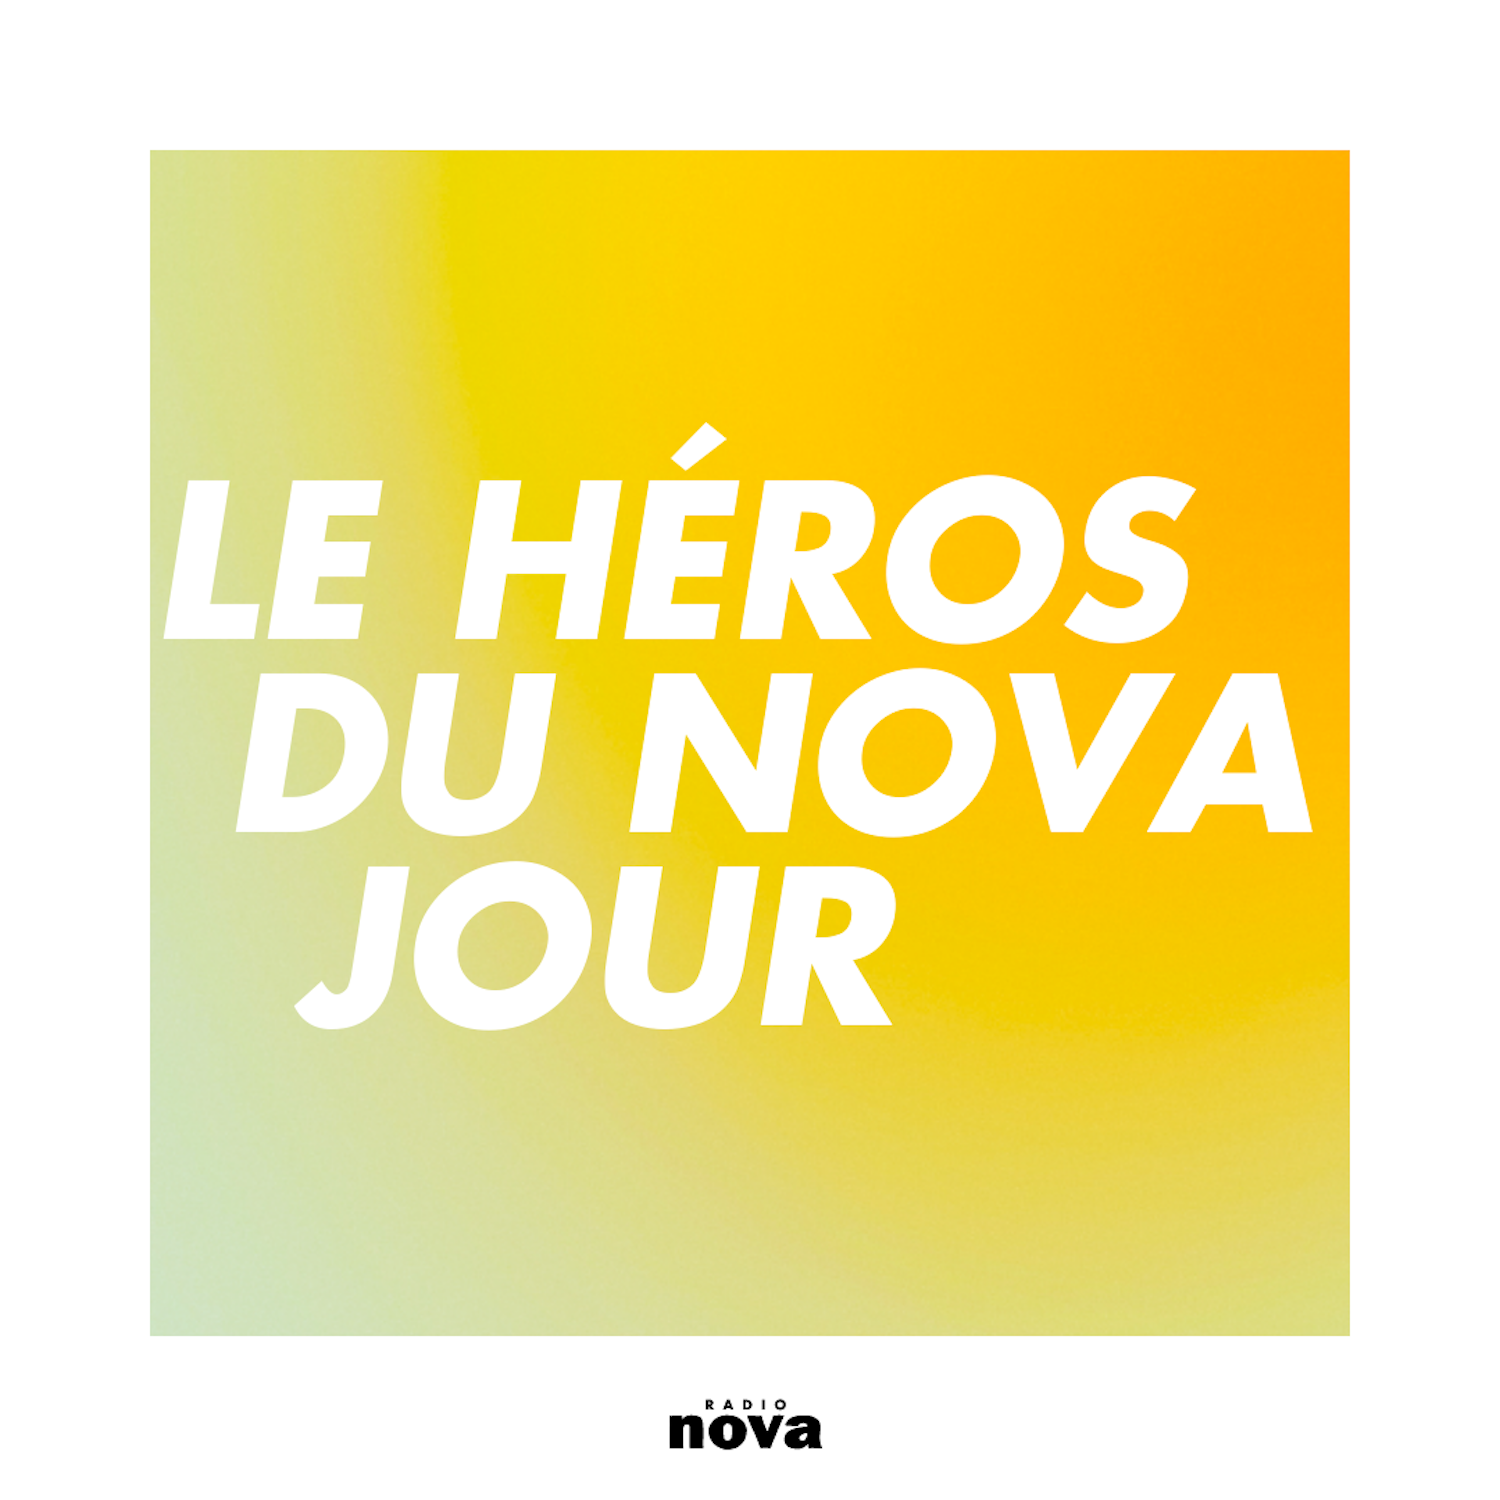 Le Héros du Nova jour image image